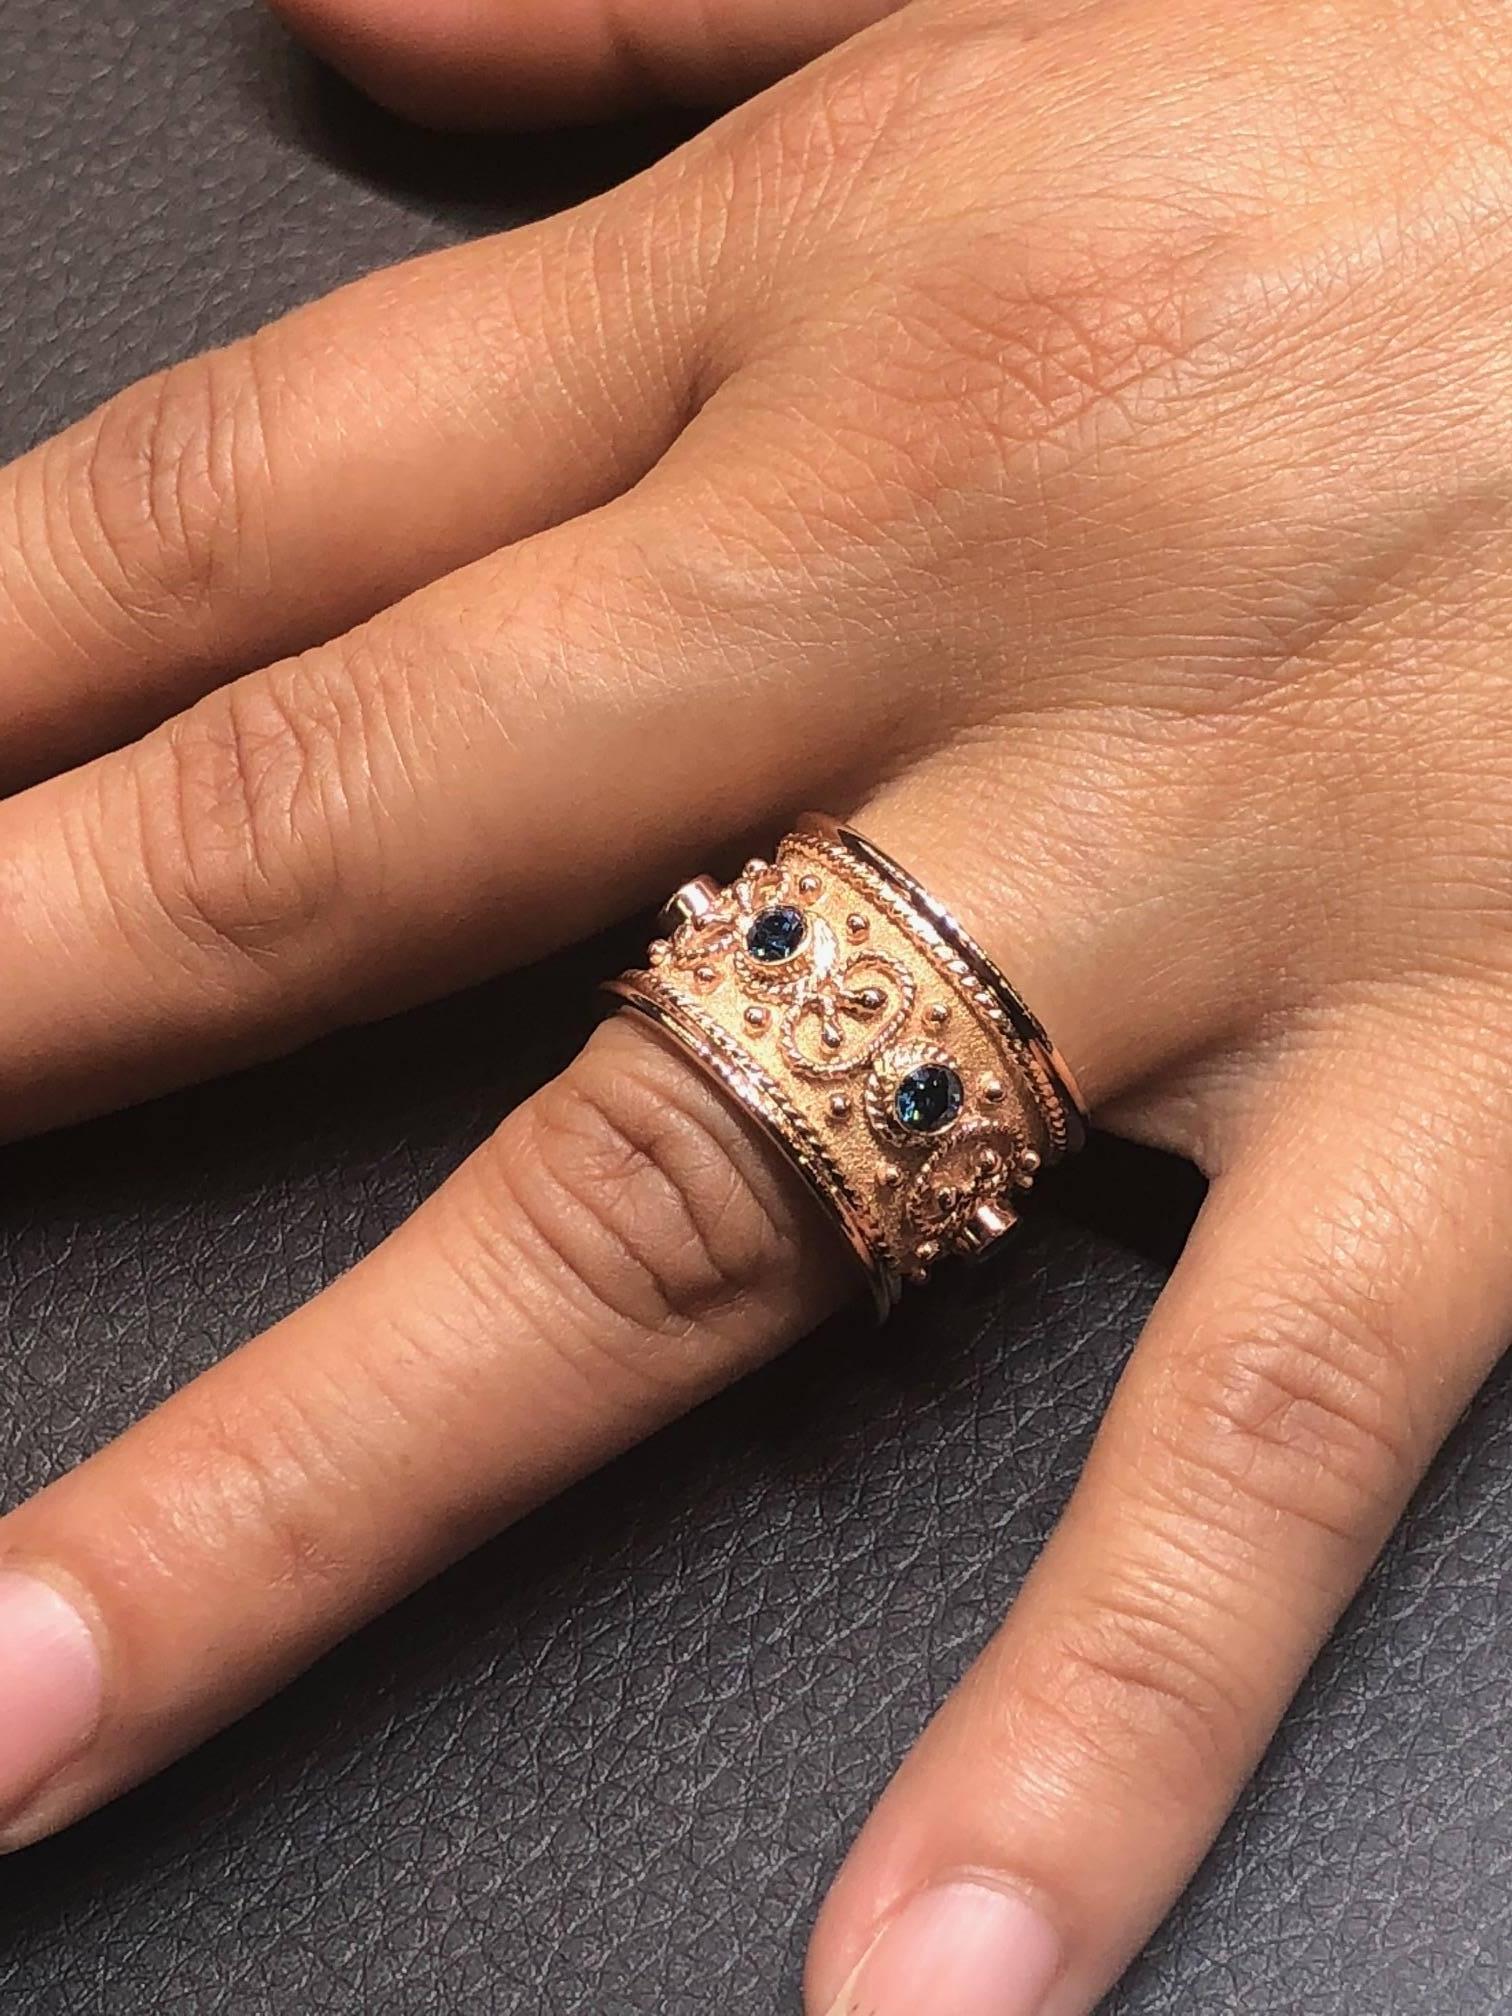 S.Georgios Special Edition Hand Made 18 Karat Rose Gold Ring mit 0,68 Karat blauen Diamanten. Der Ring ist rundherum mikroskopisch mit Goldperlen und -drähten verziert - Granulation - in Form des letzten Buchstabens des griechischen Alphabets -